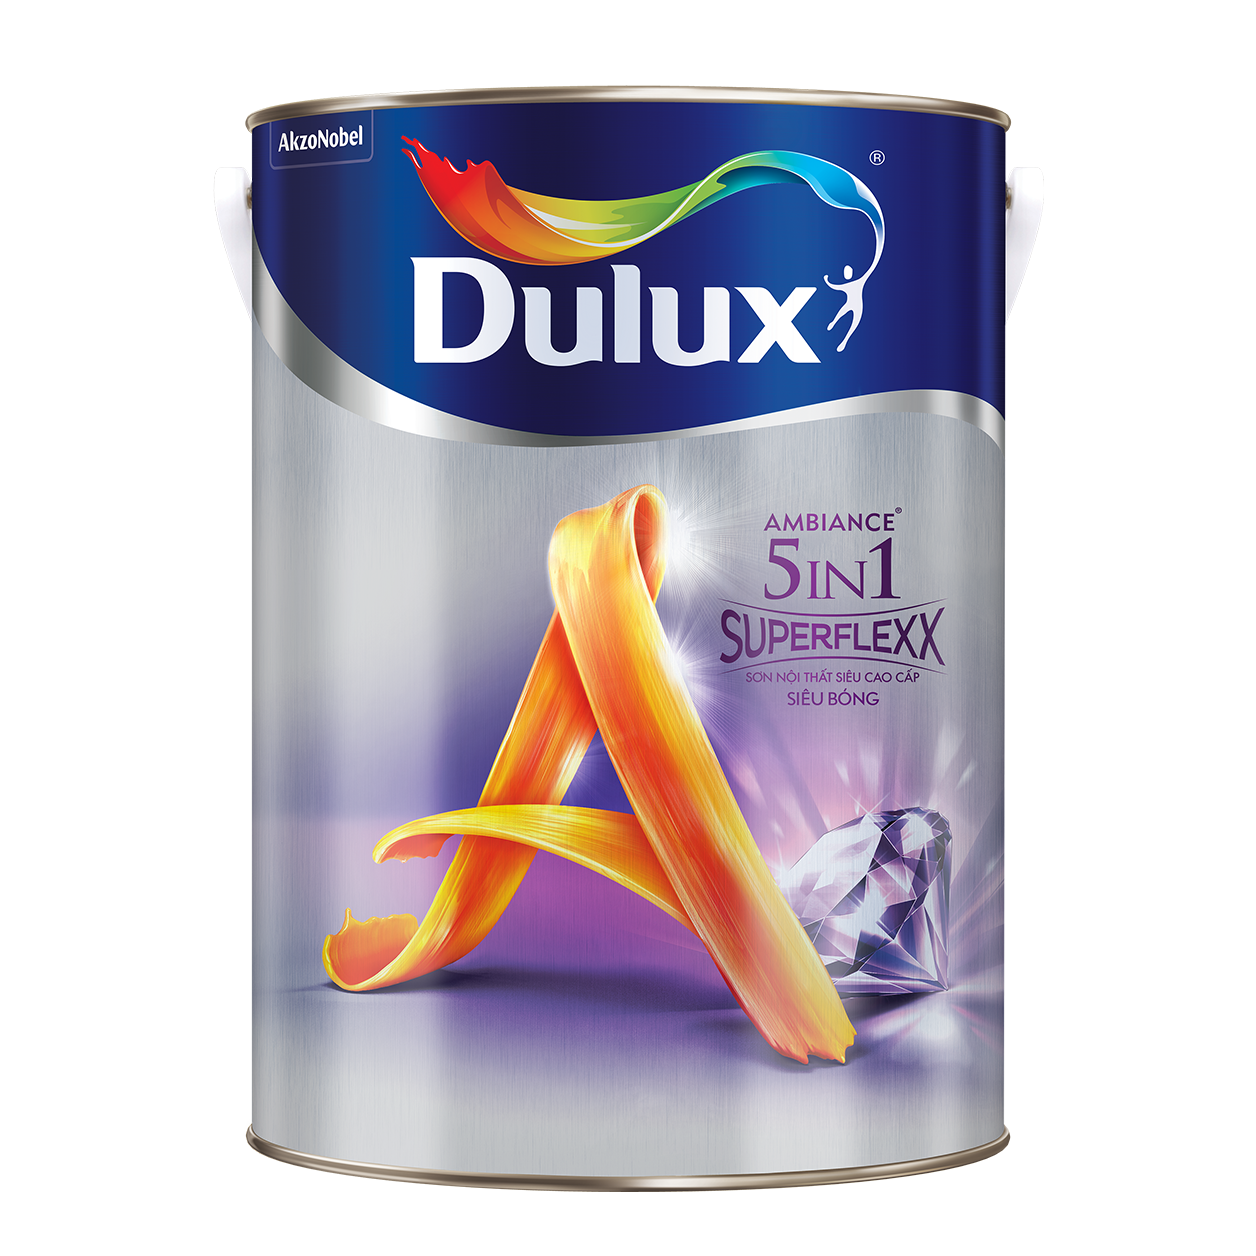 Các tính năng và lợi ích khi sử dụng sơn Dulux Ambiance 5 in 1